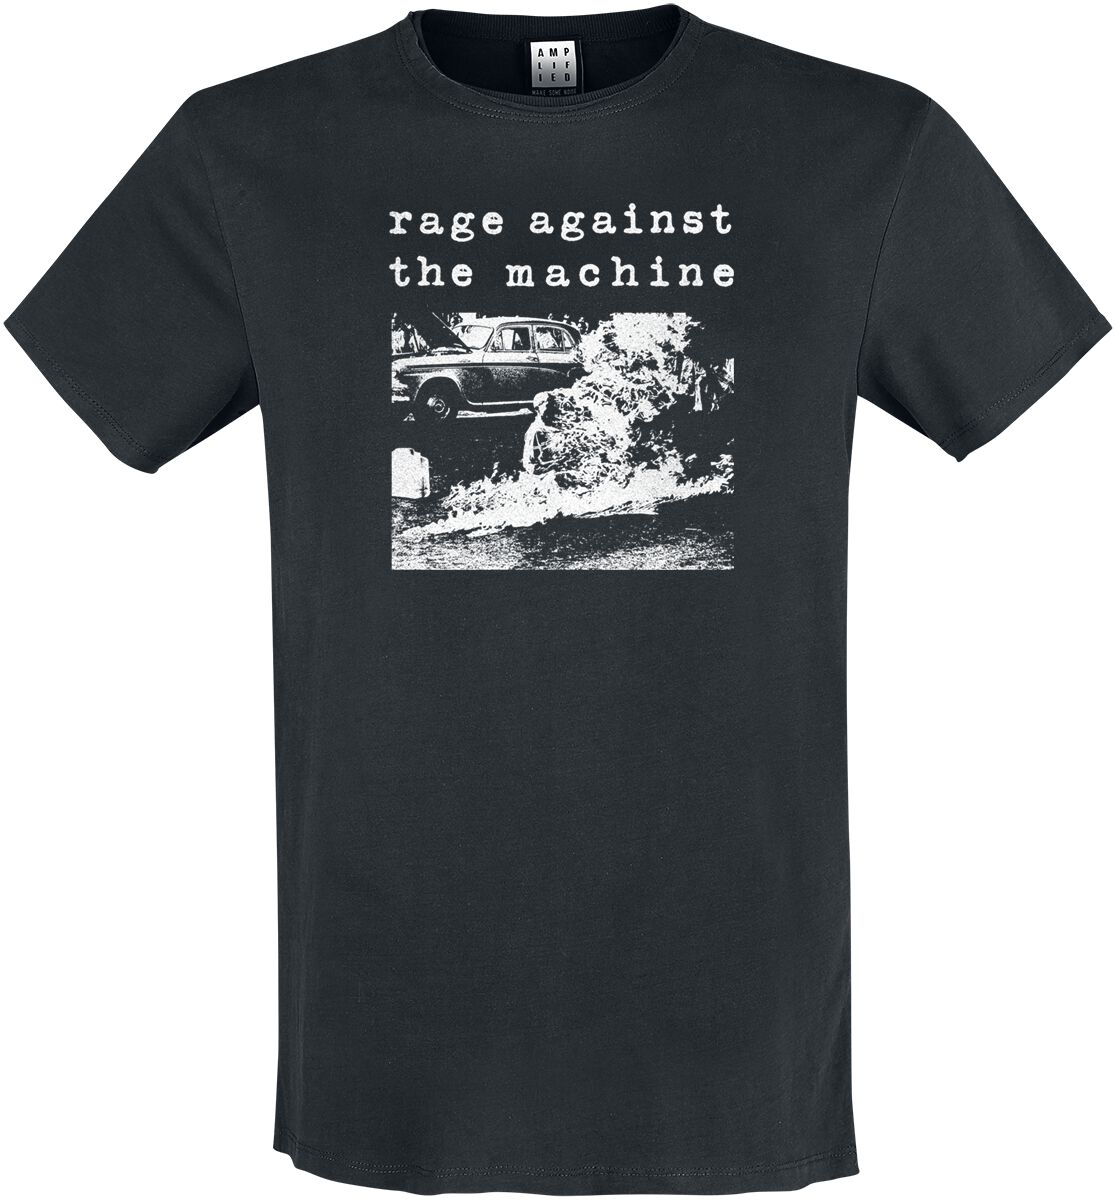 Rage Against The Machine T-Shirt - Amplified Collection - Monk Fire - S bis 3XL - für Männer - Größe L - schwarz  - Lizenziertes Merchandise!